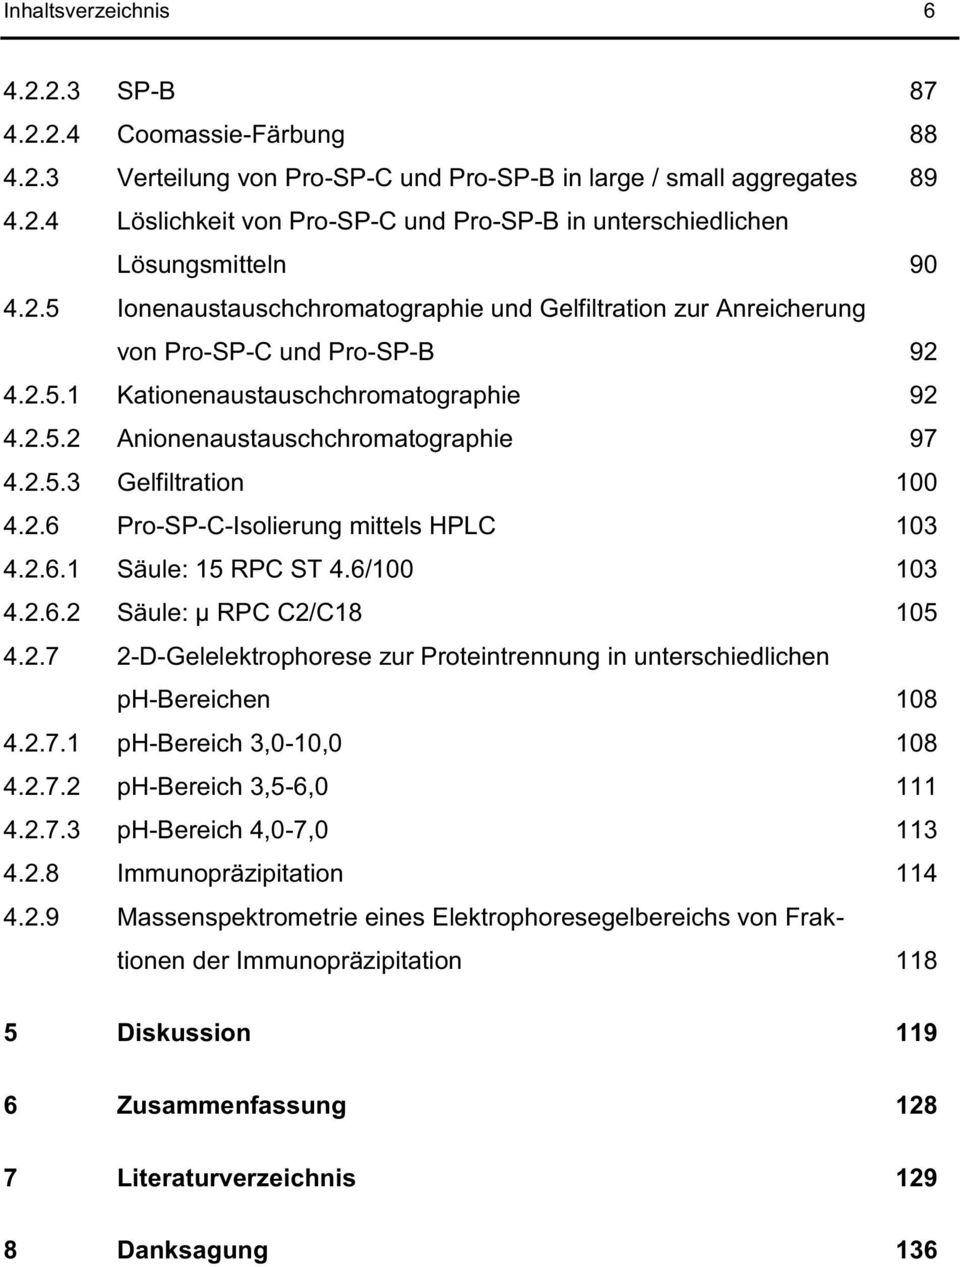 2.6 Pro-SP-C-Isolierung mittels HPLC 103 4.2.6.1 Säule: 15 RPC ST 4.6/100 103 4.2.6.2 Säule: µ RPC C2/C18 105 4.2.7 2-D-Gelelektrophorese zur Proteintrennung in unterschiedlichen ph-bereichen 108 4.2.7.1 ph-bereich 3,0-10,0 108 4.